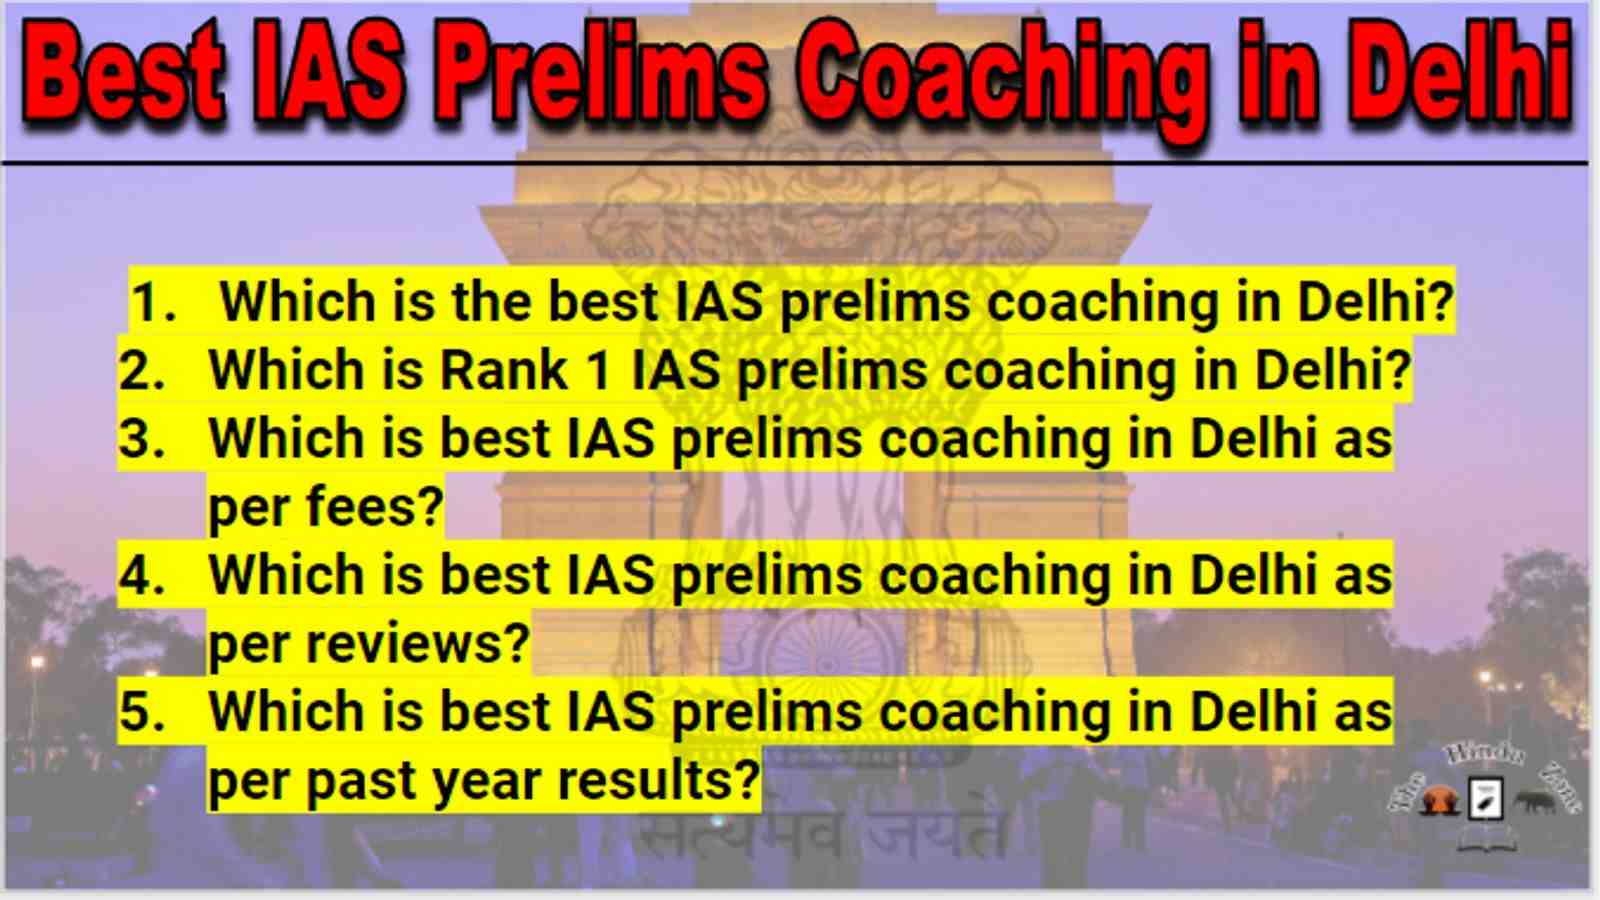 Best IAS Prelims Coaching in Delhi